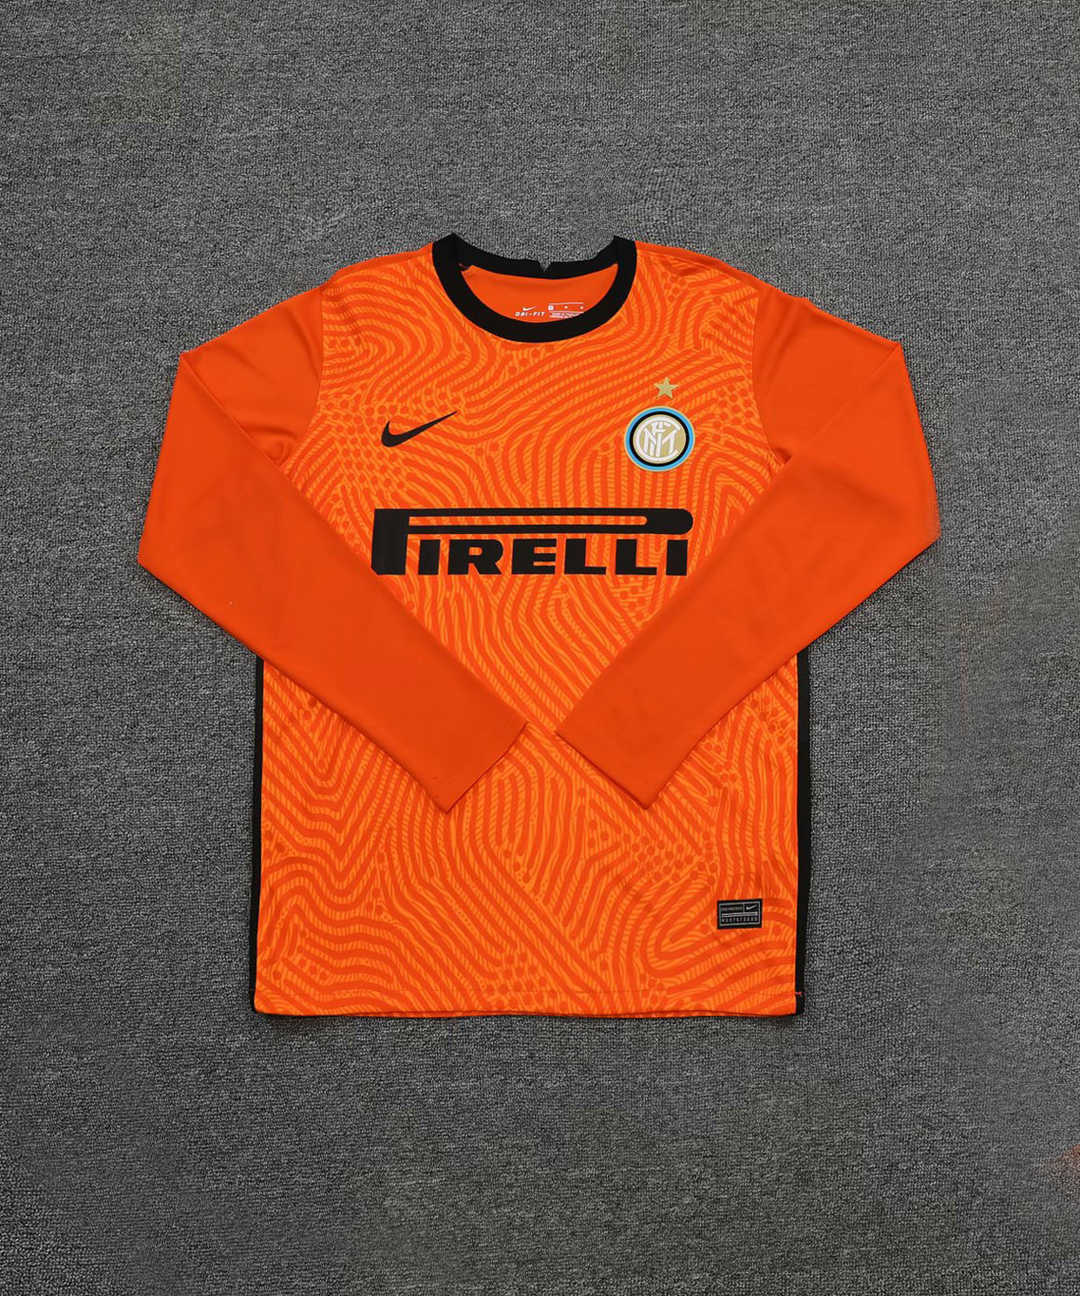 20/21 Inter Milan Goalkeeper Orange Long Sleeve Jersey Men's - Click Image to Close